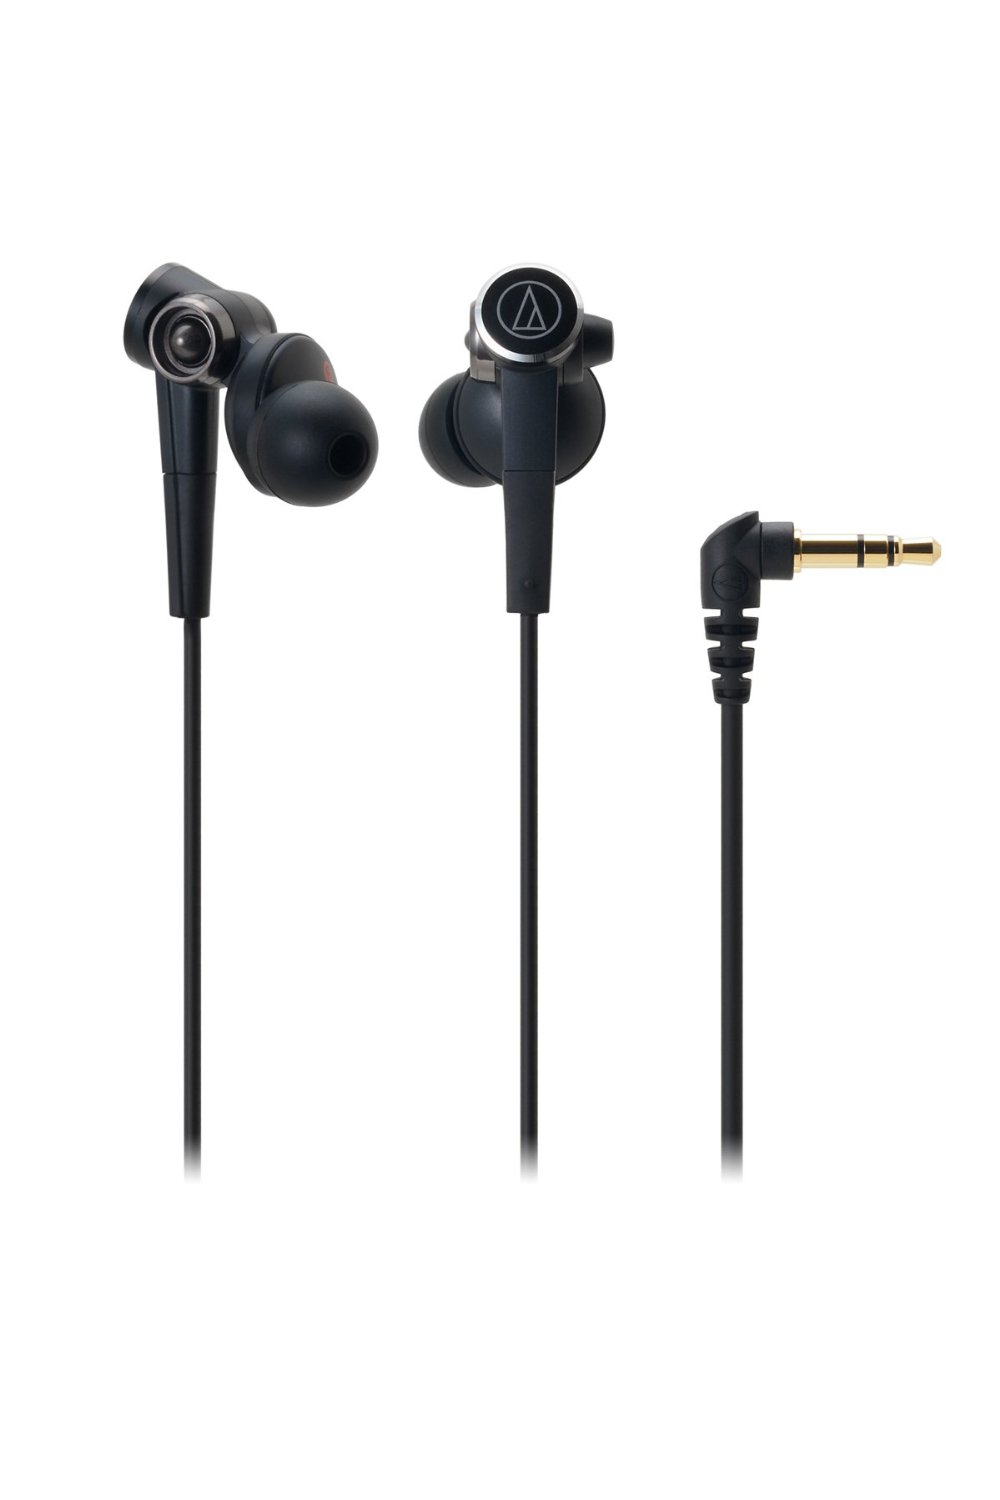 Audio-Technica ATH-bajos sólidos CKS99 In-Ear auriculares